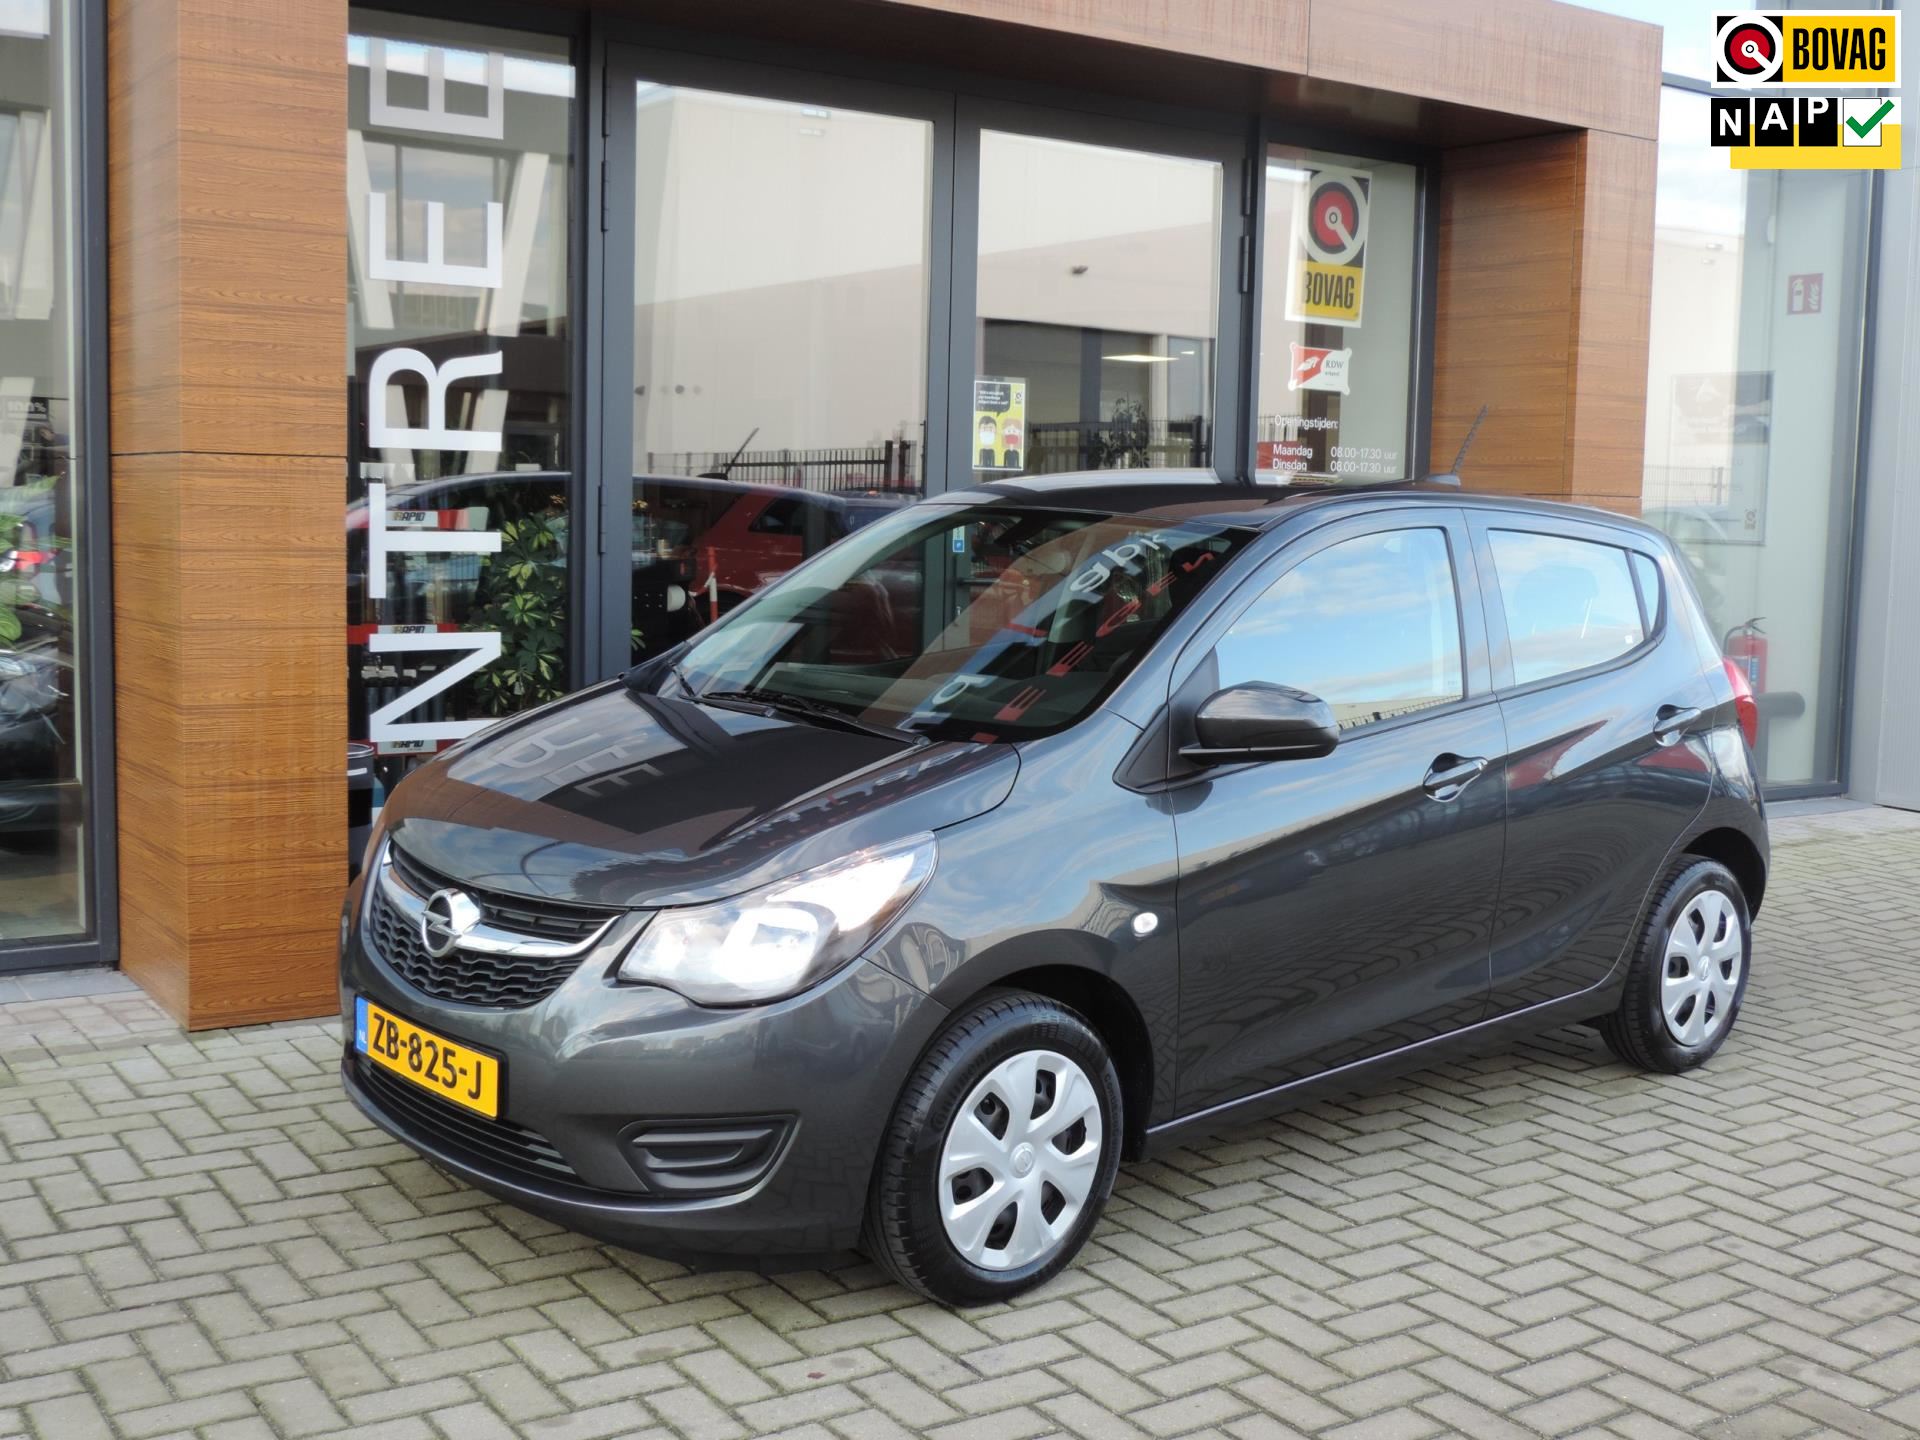 Opel KARL occasion - Autobedrijf van Meegen